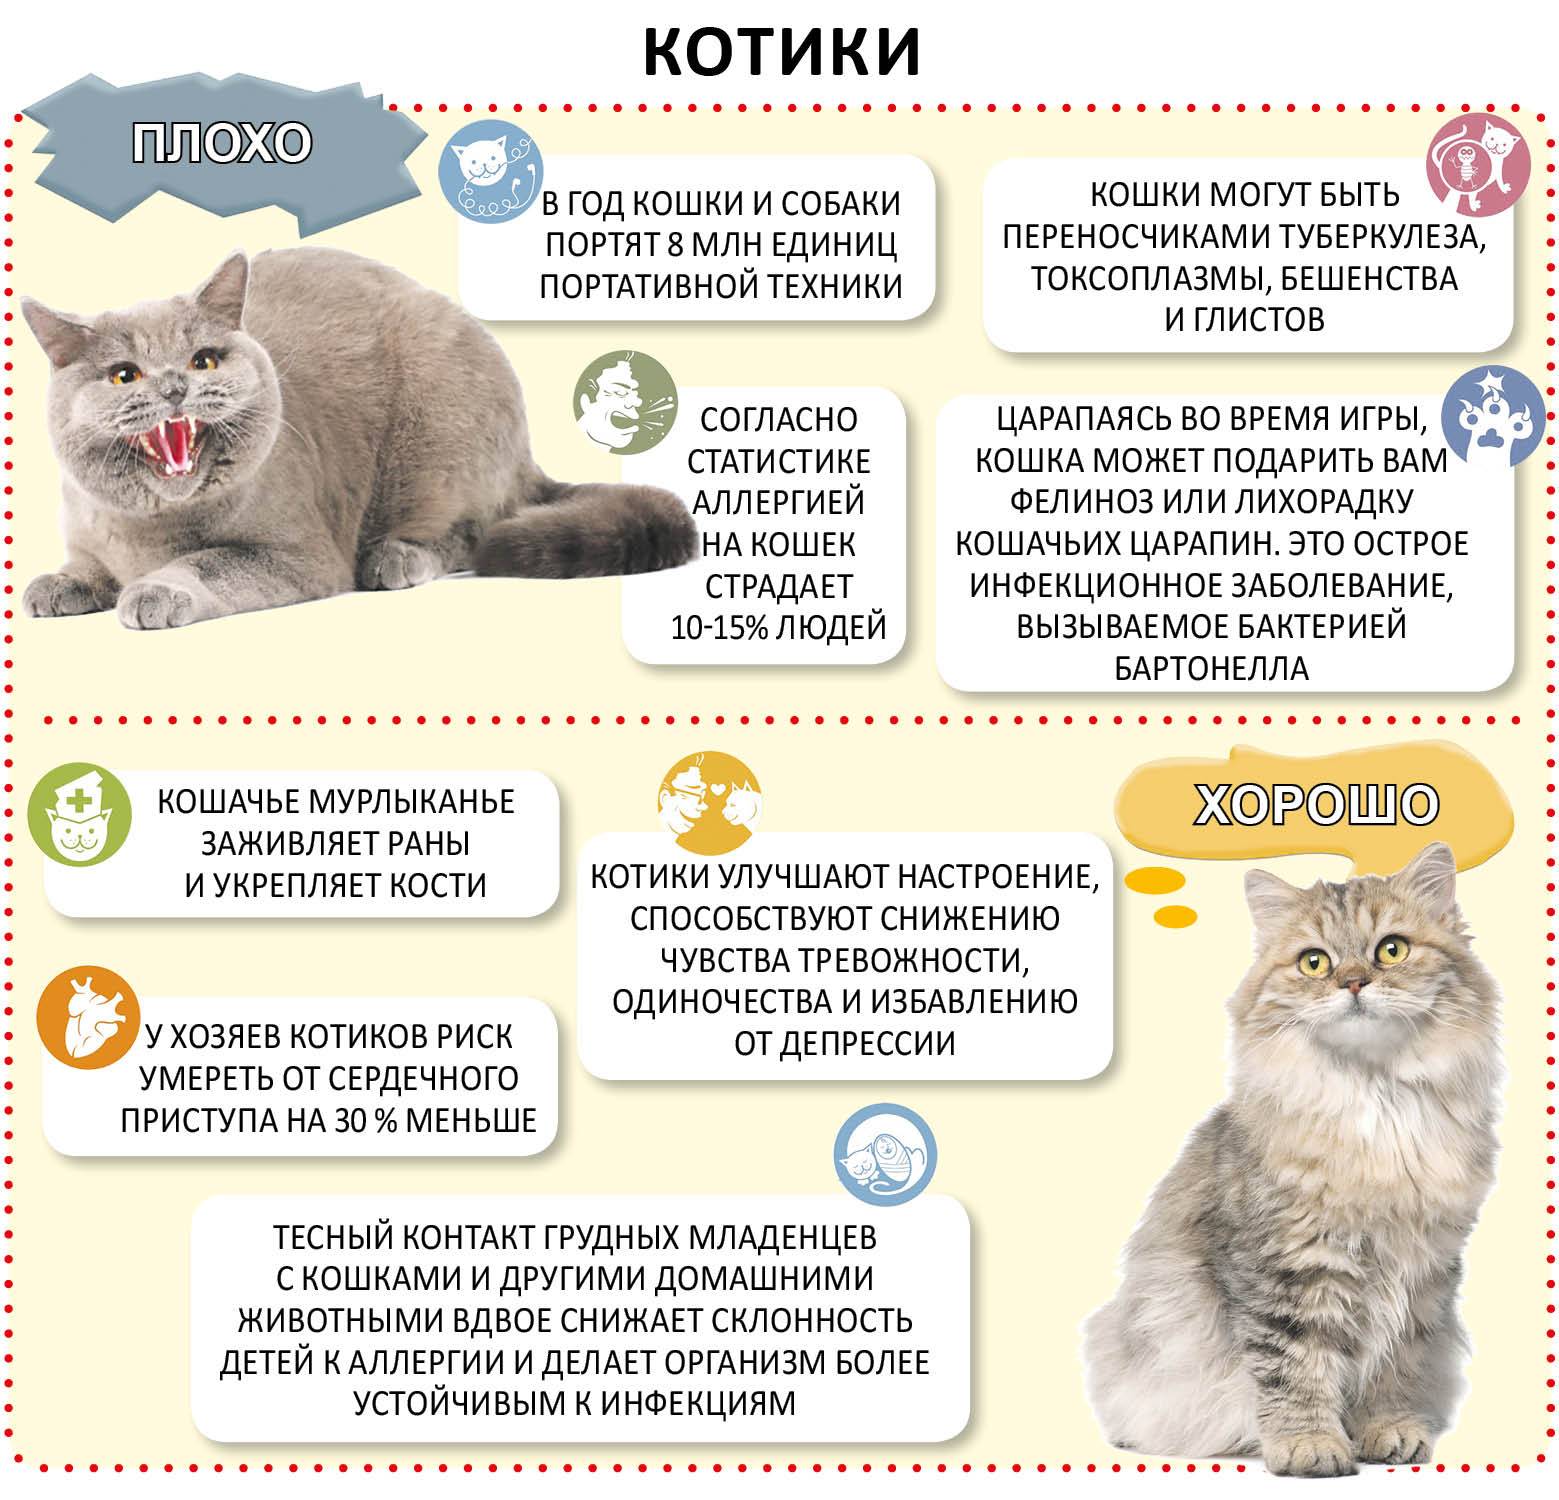 Стерилизация кошки: что это такое и какие нюансы надо знать